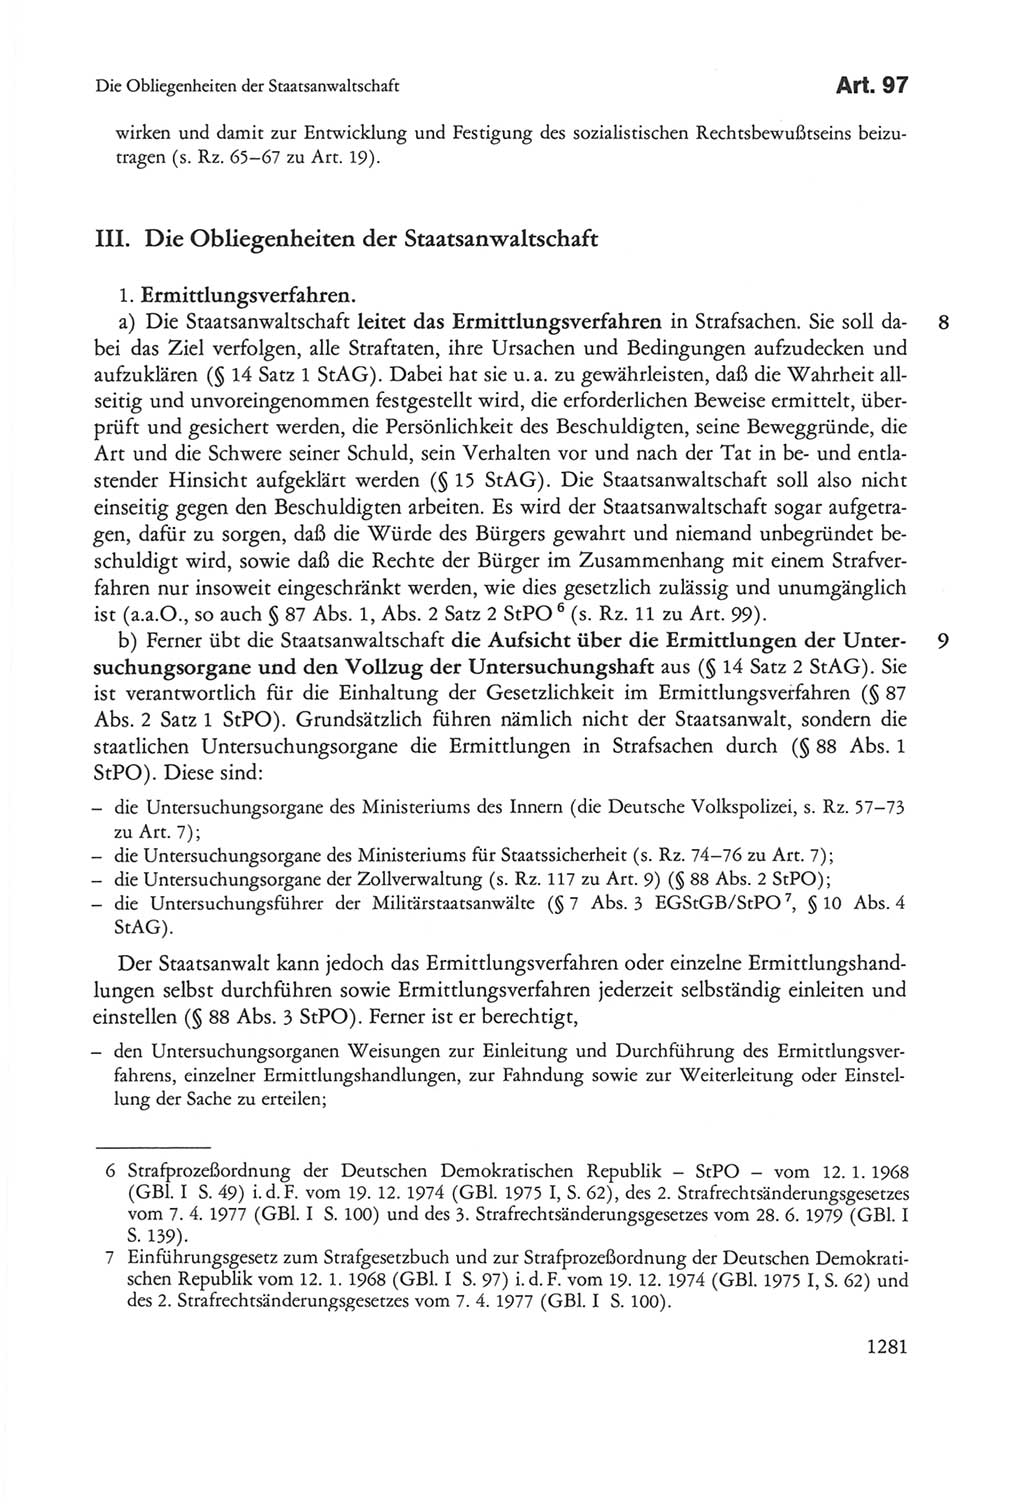 Die sozialistische Verfassung der Deutschen Demokratischen Republik (DDR), Kommentar 1982, Seite 1281 (Soz. Verf. DDR Komm. 1982, S. 1281)